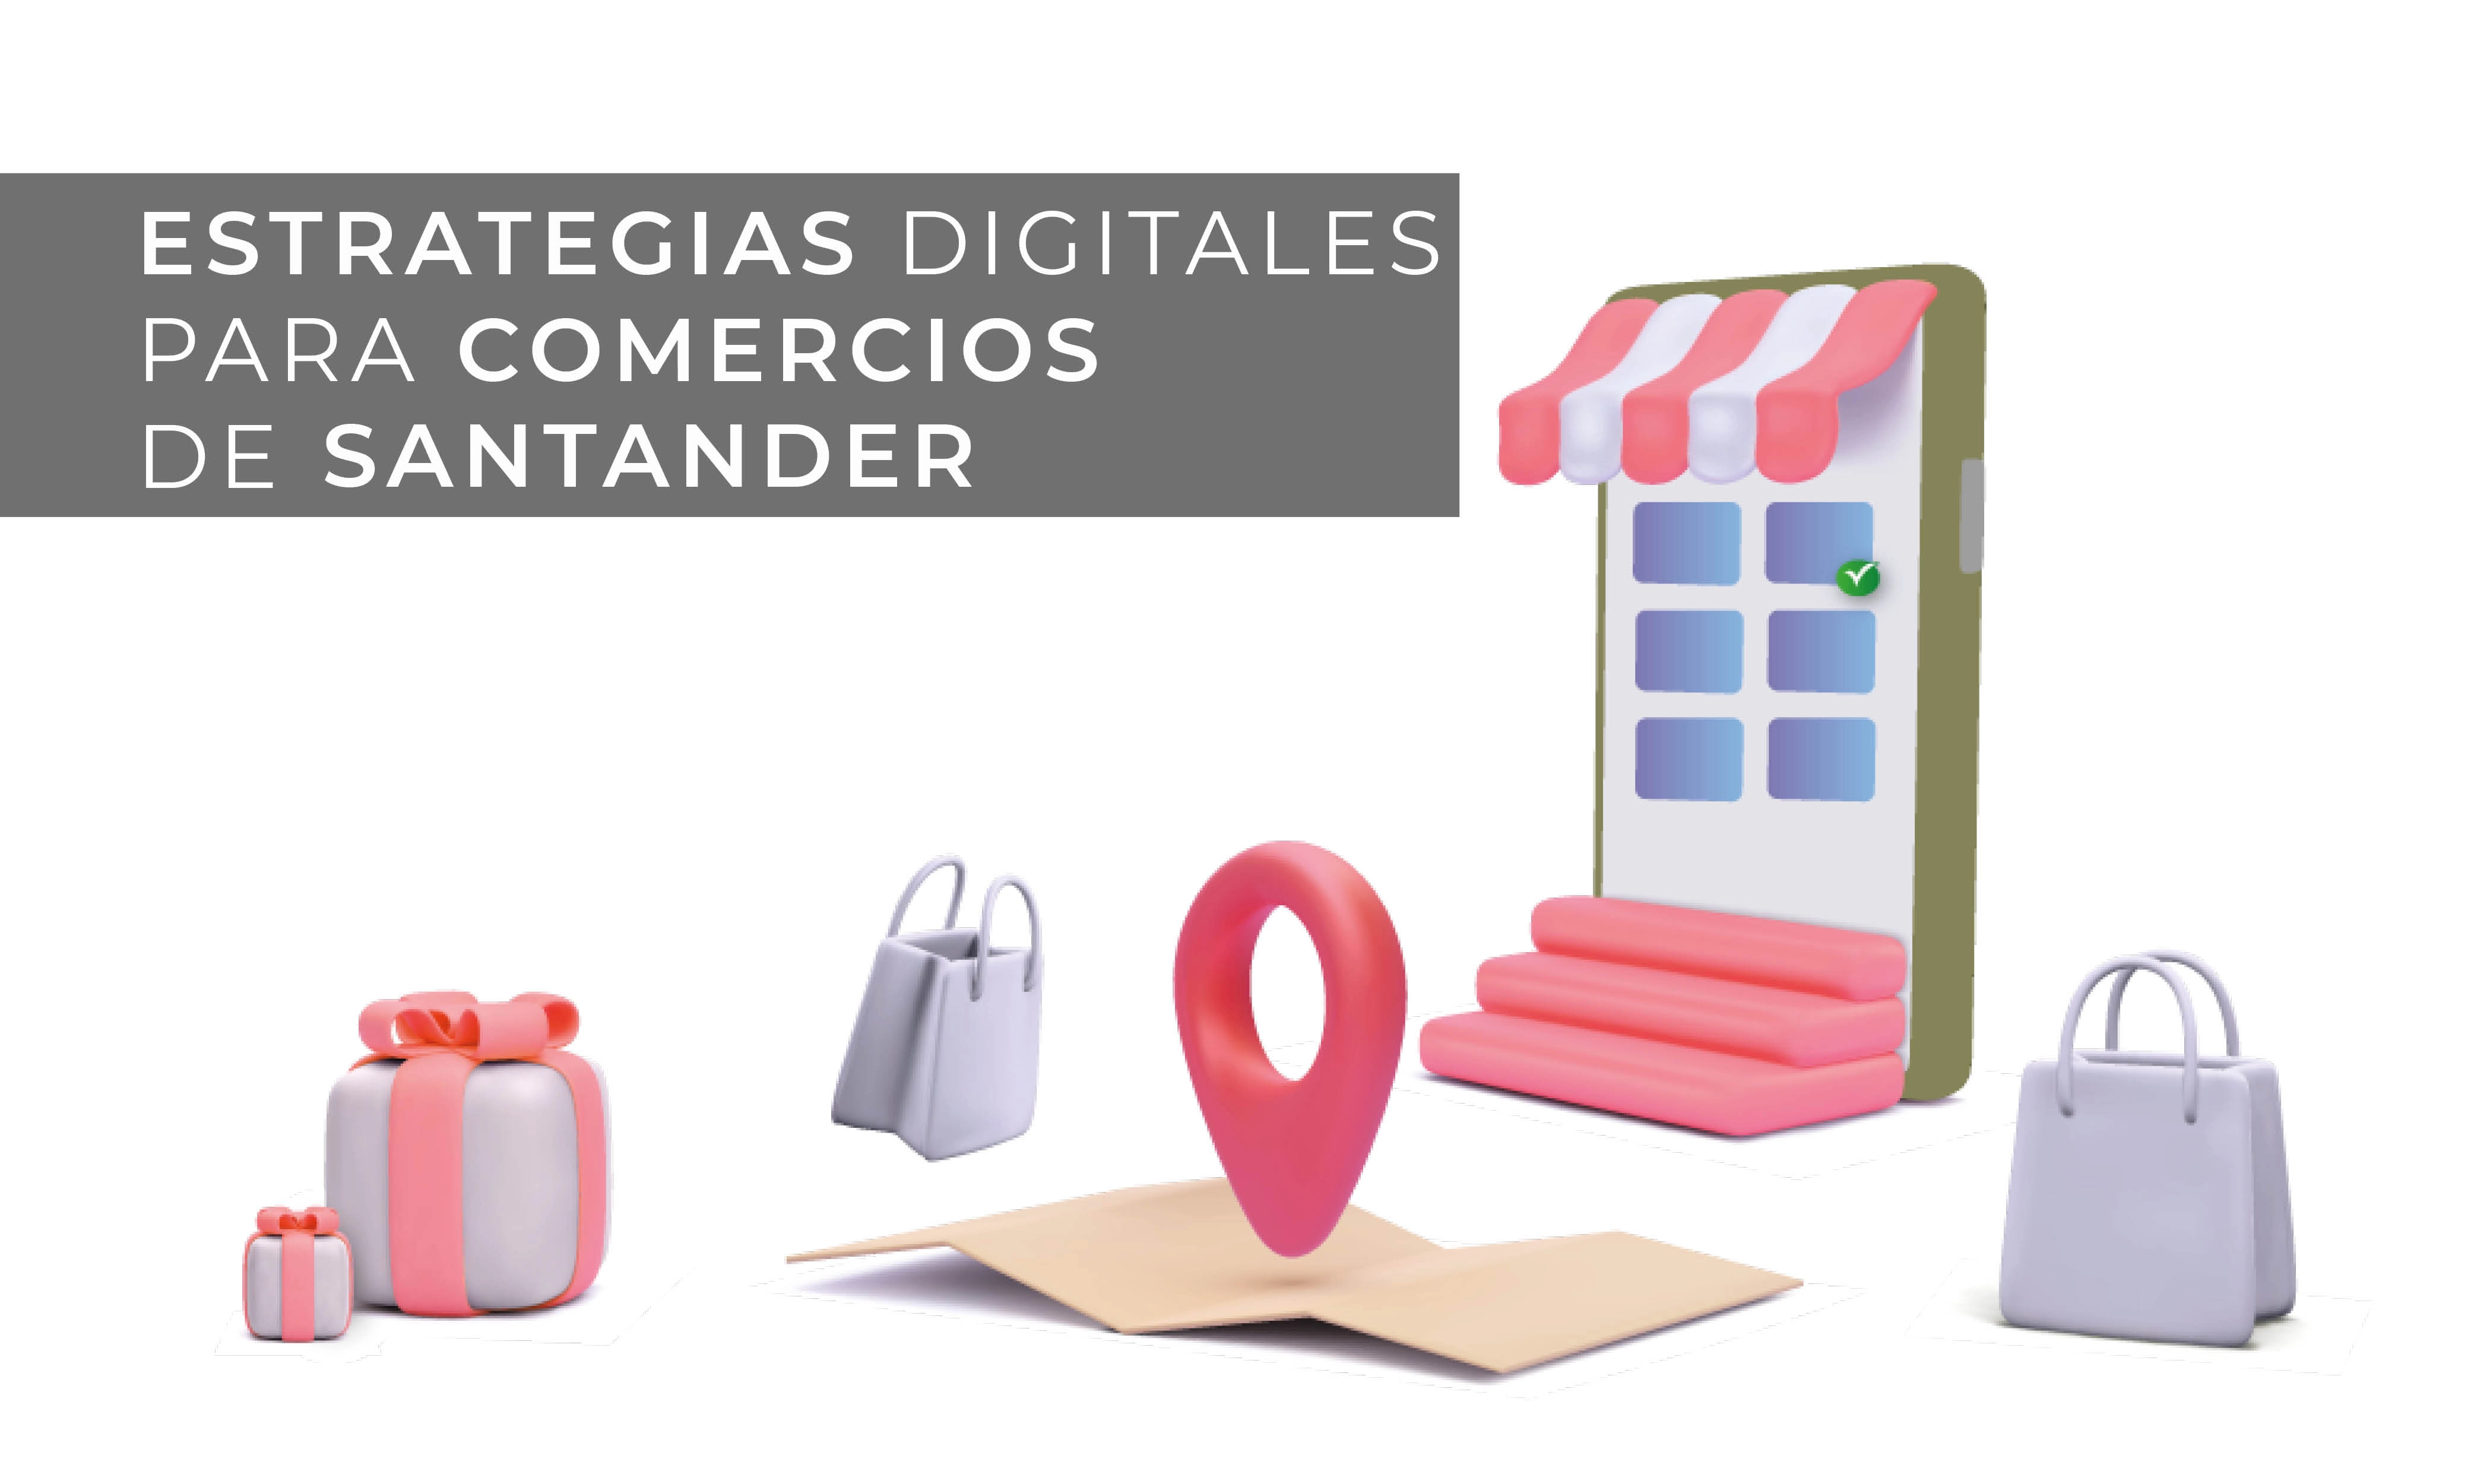 Estrategias digitales para emprendedores y pequeñas o medianas empresas Santander